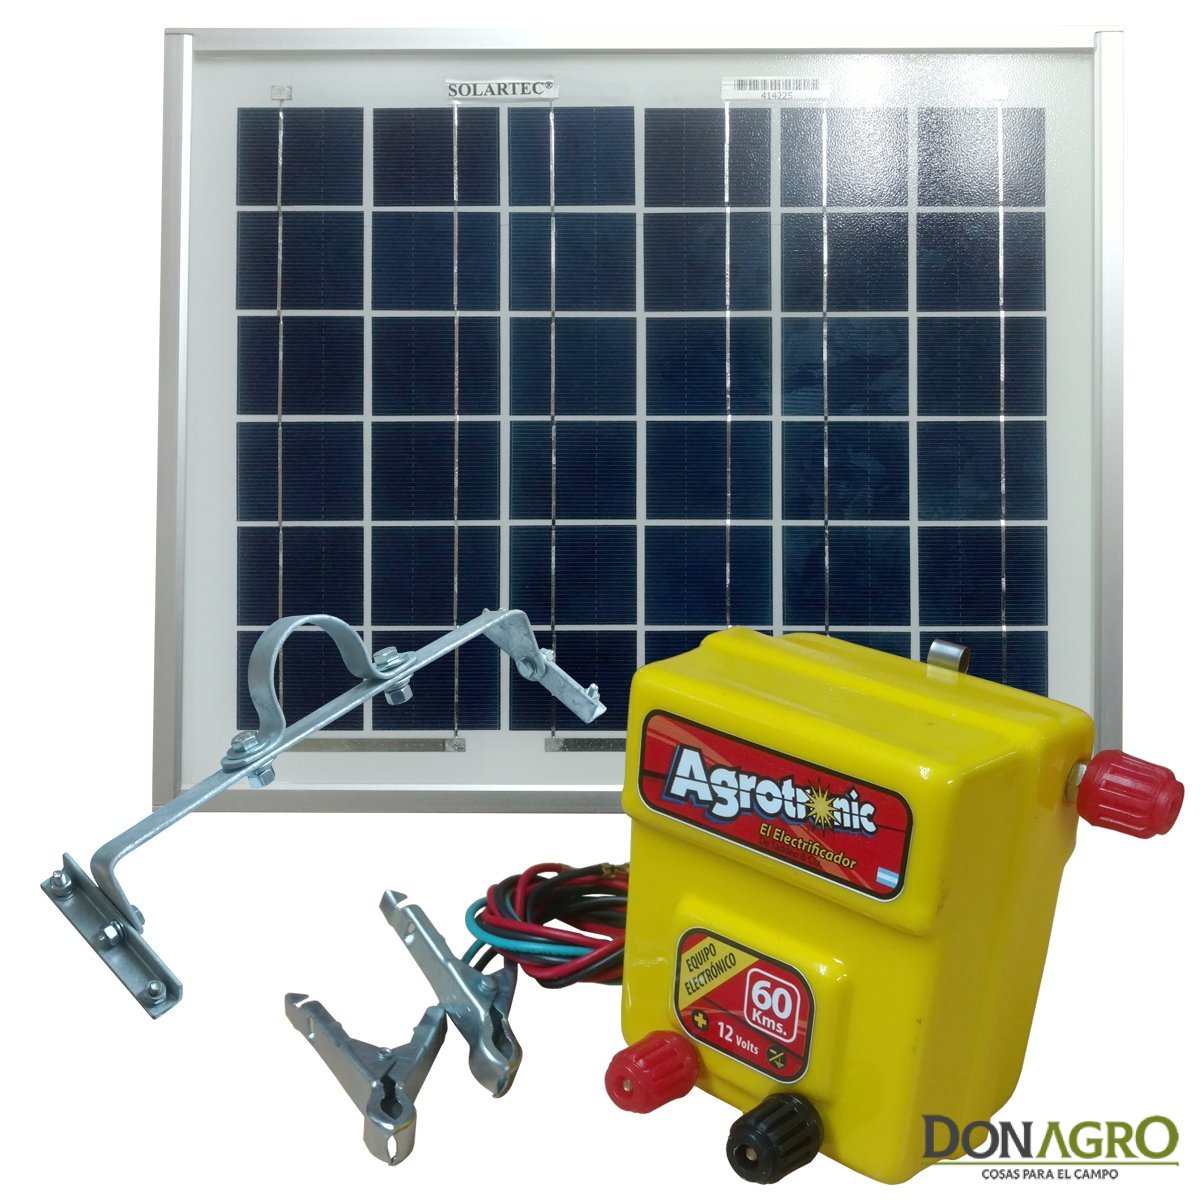 Boyero Electrificador Solar Agrotronic SOLARTEC 1.8j 60km